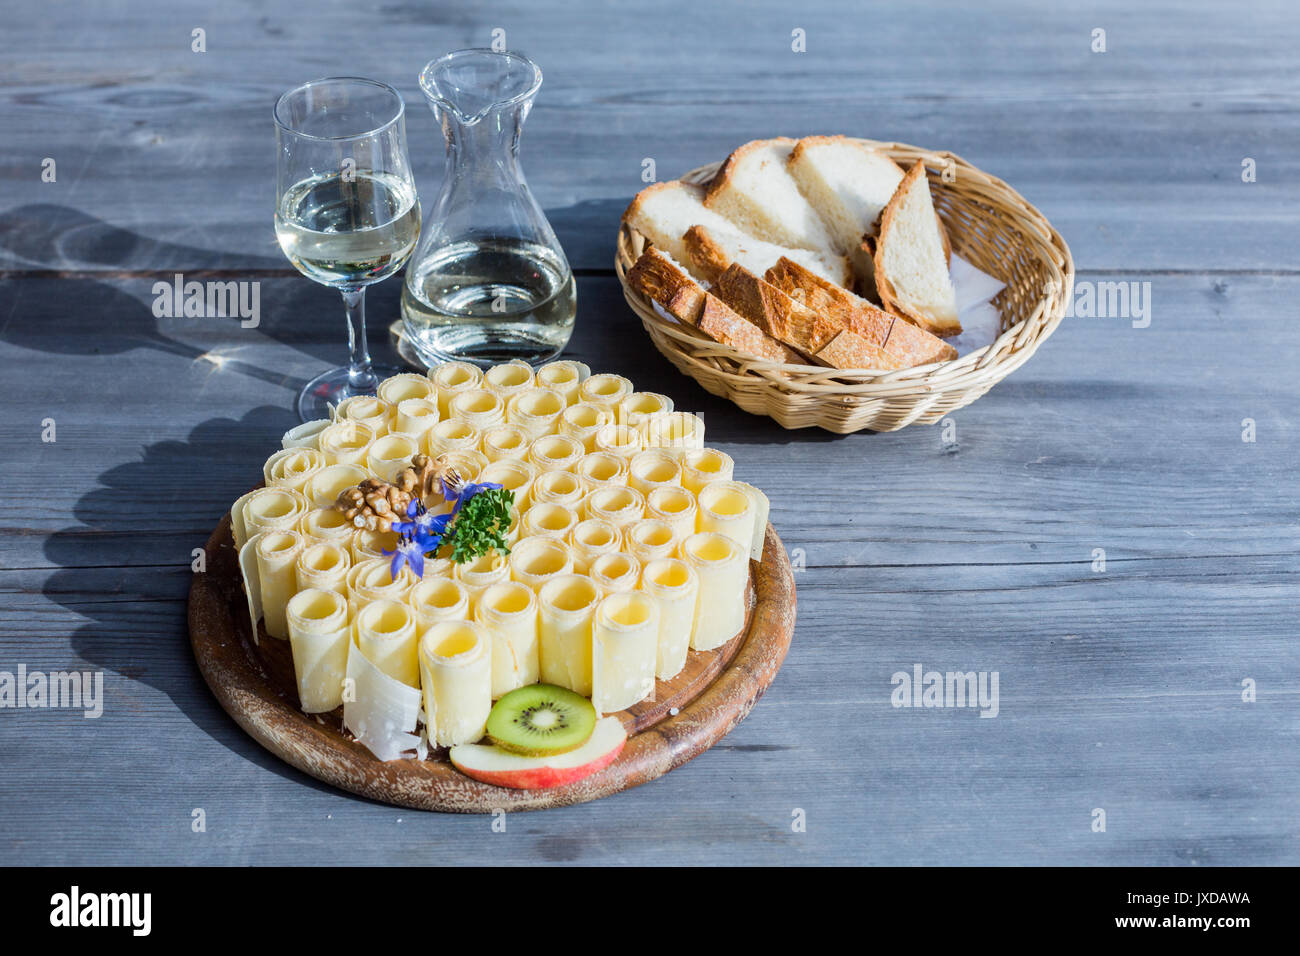 Ein Tablett mit Käse Brötchen mit einem Krug Wein und einen Korb mit Brot  serviert. Diese Mahlzeit ist eine Schweizer Spezialität Stockfotografie -  Alamy